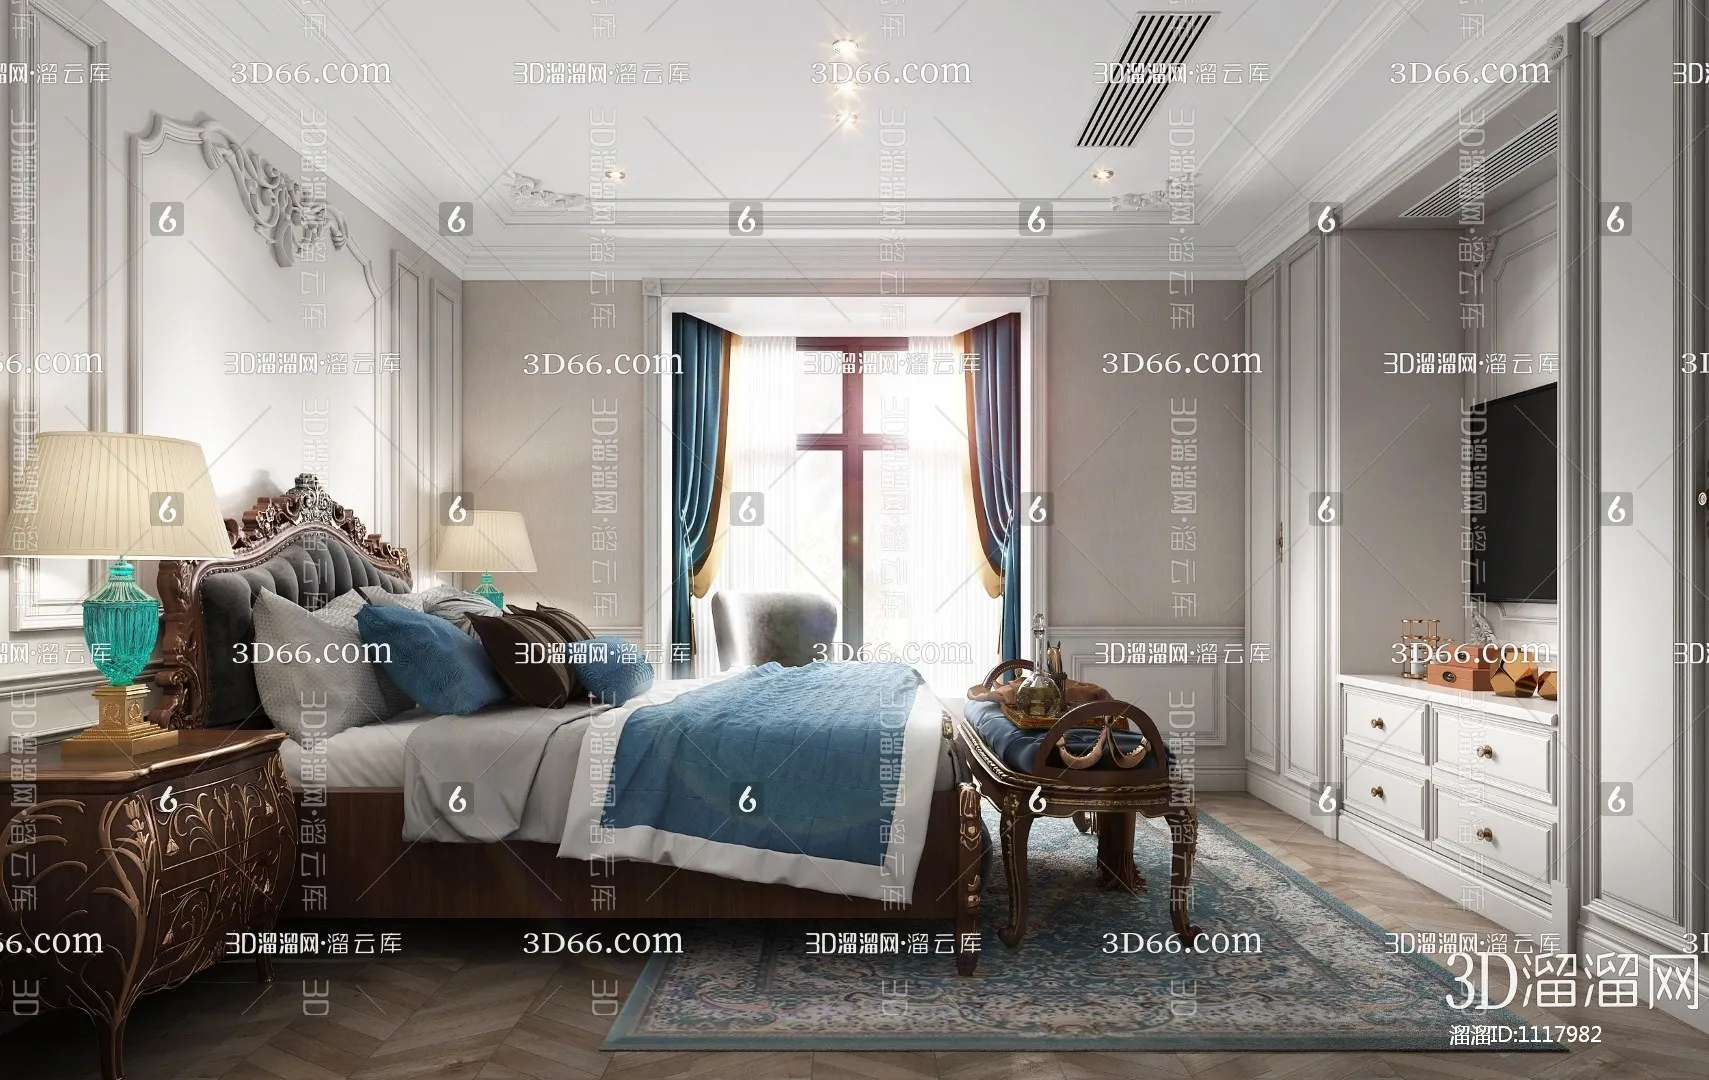 Bedroom 3D Scenes – European – 0137